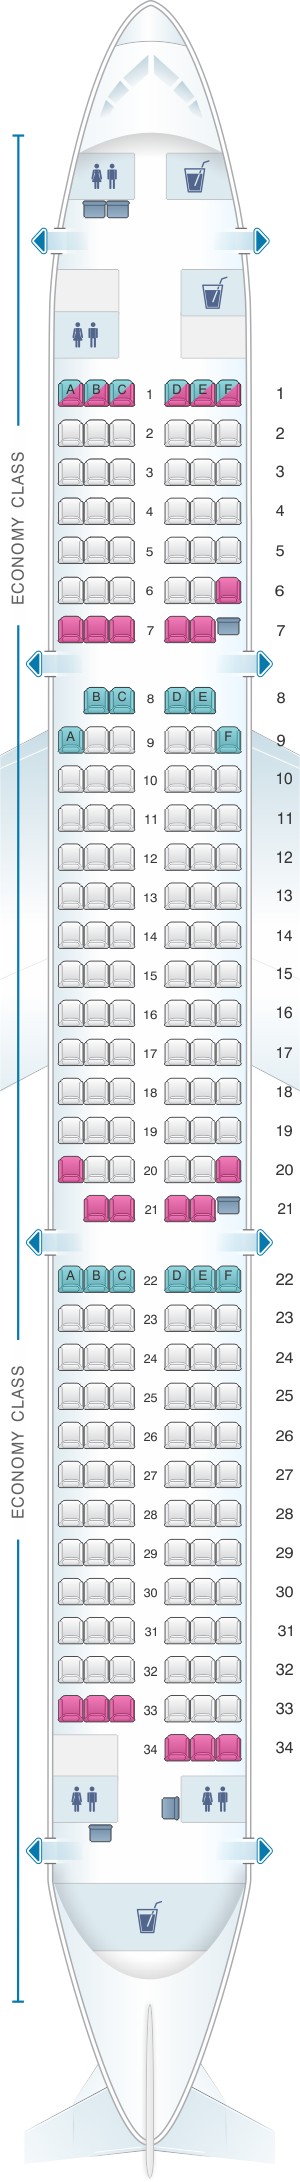 Seat Map Finnair Airbus A321 | SeatMaestro.com